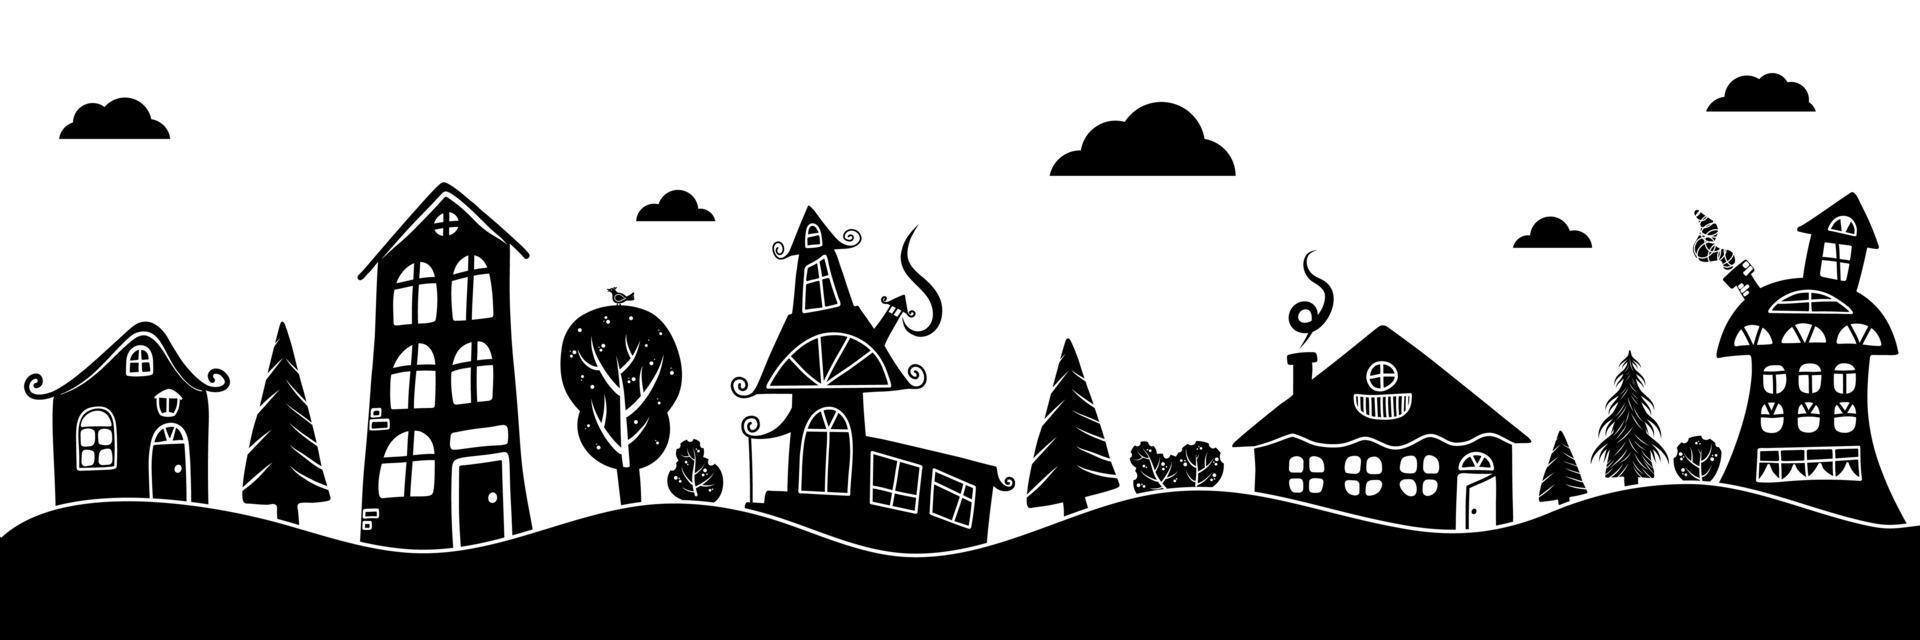 pequeño dibujos animados pueblo silueta separar nubes con casas arboles negro y blanco. vector ilustración con hada pueblo silueta.